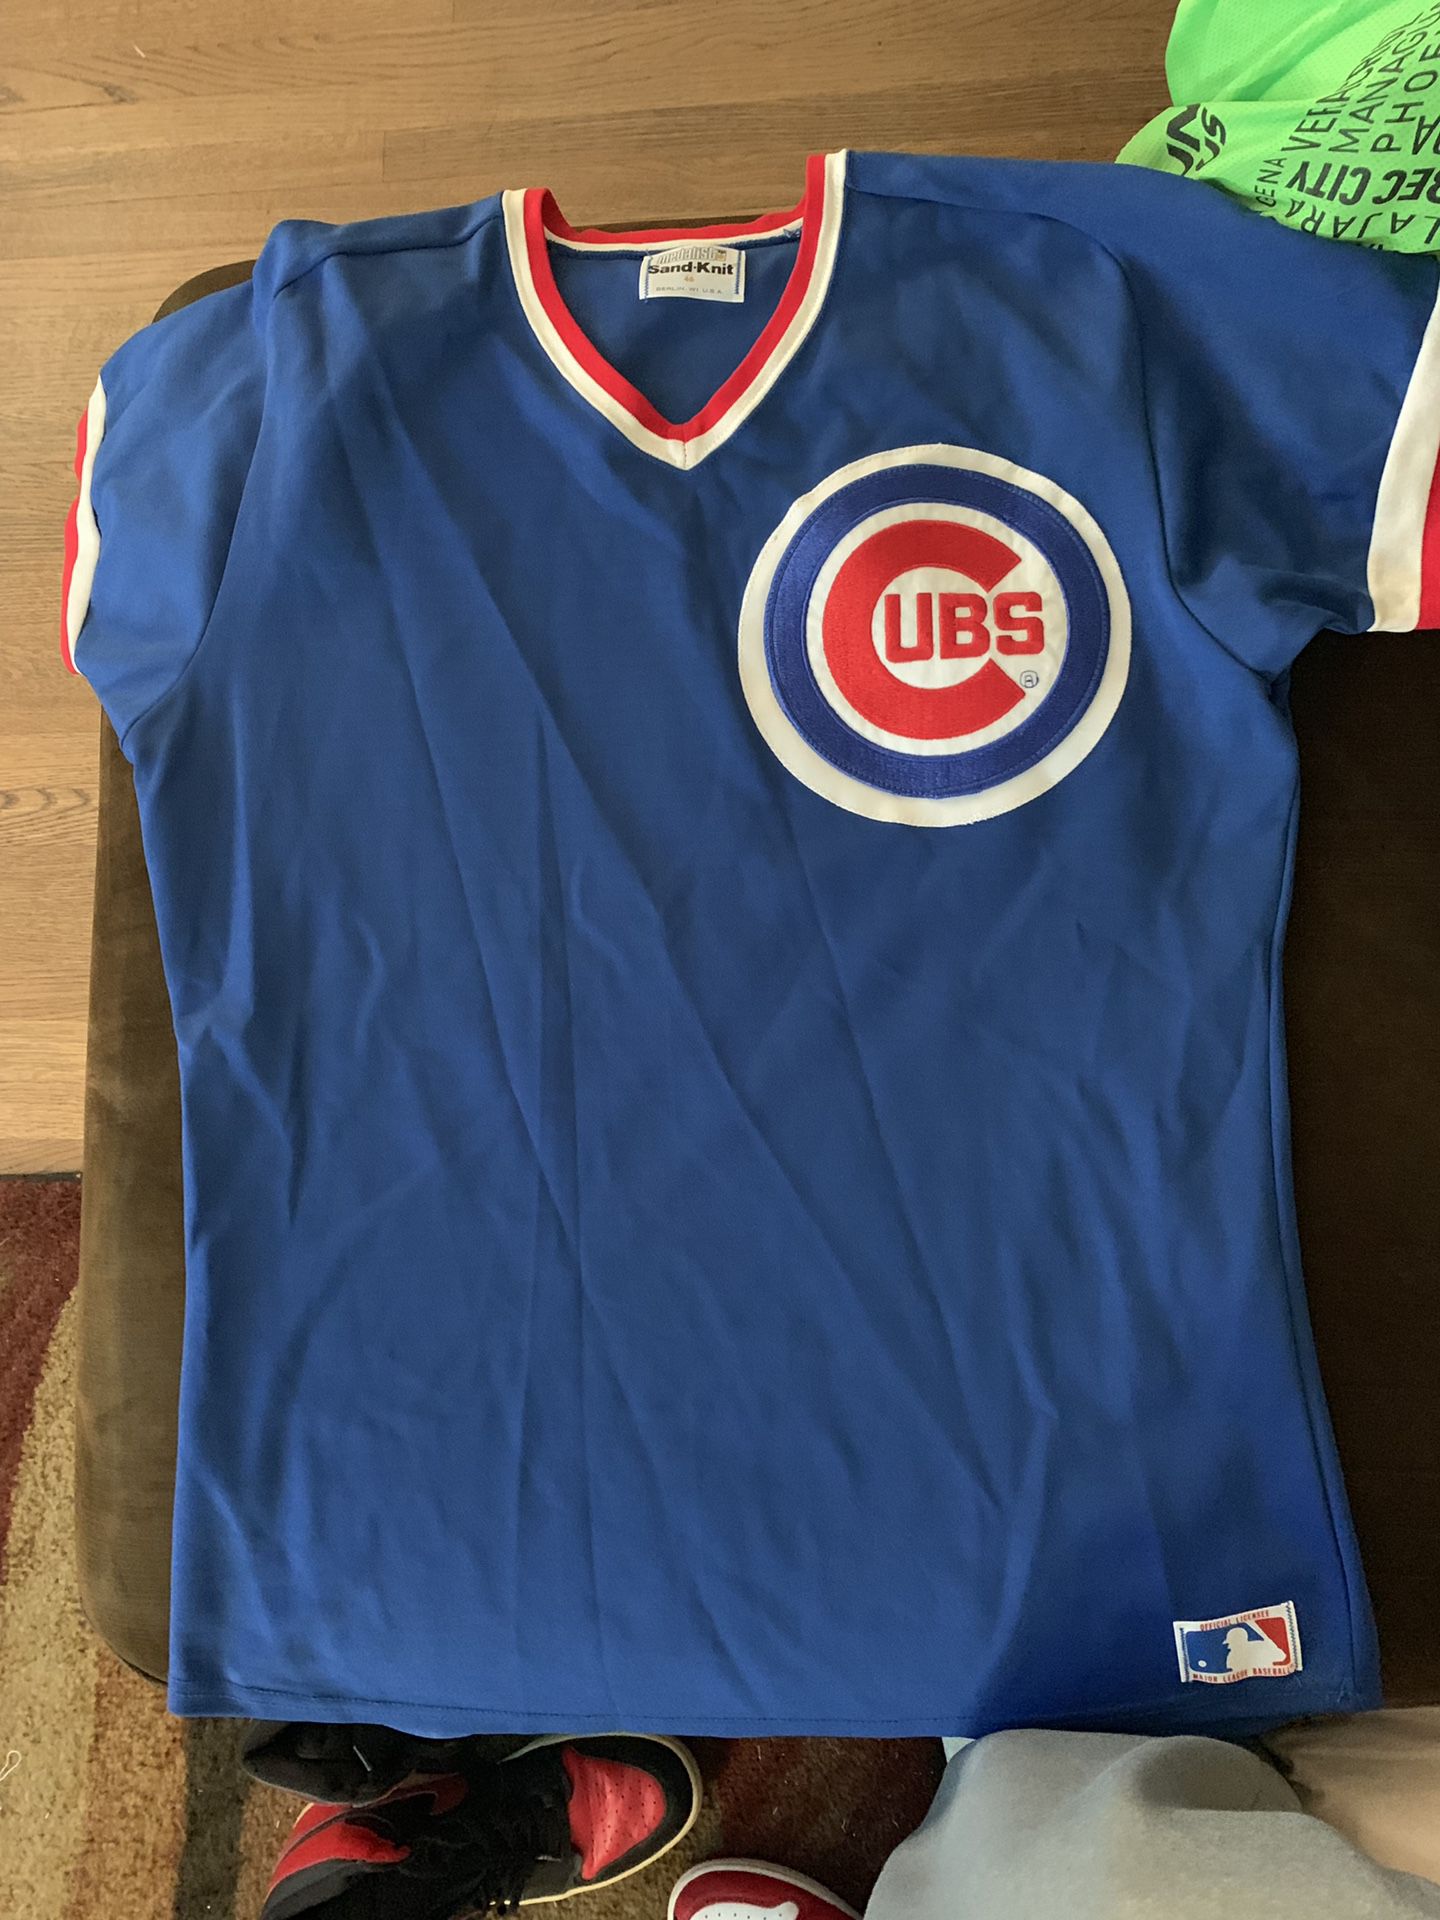 Cubs Sandknit jersey